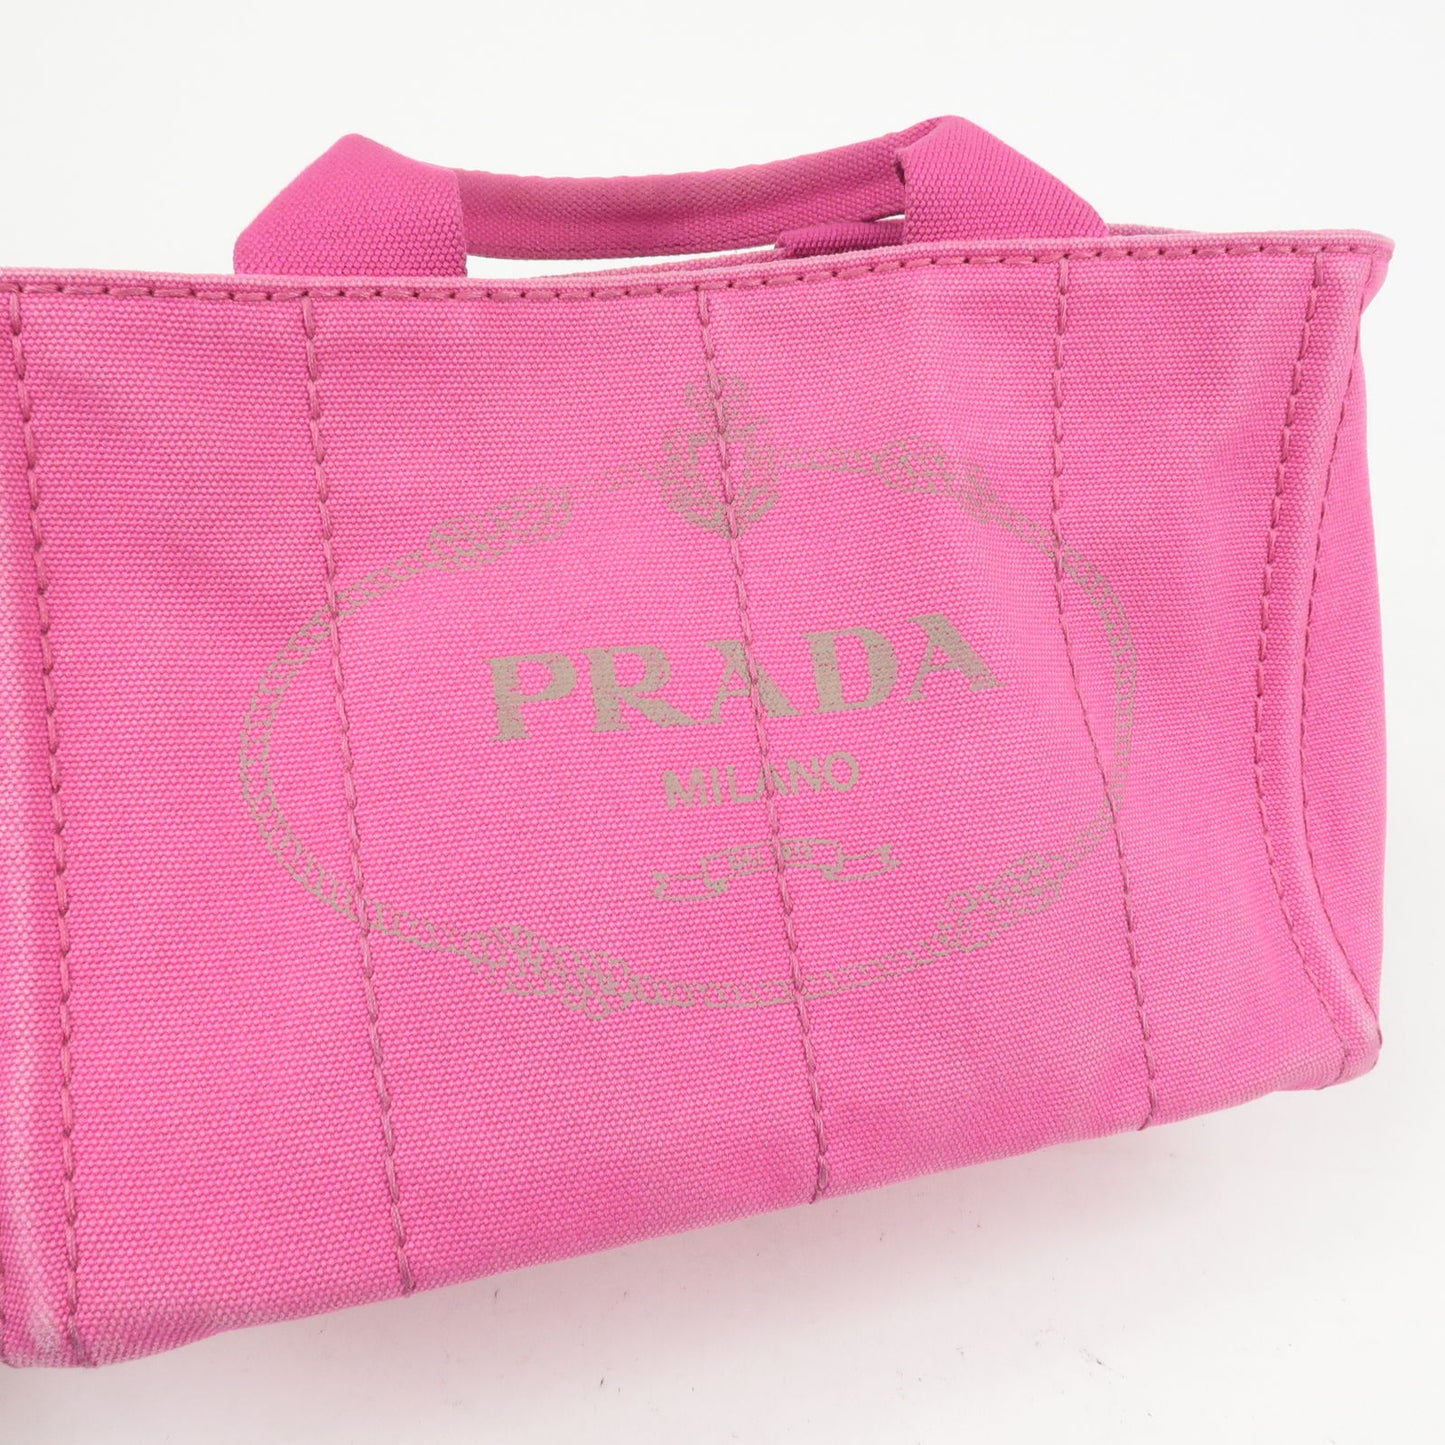 PRADA Canapa Mini Canvas 2Way Bag Shoulder Bag Hand Bag Pink